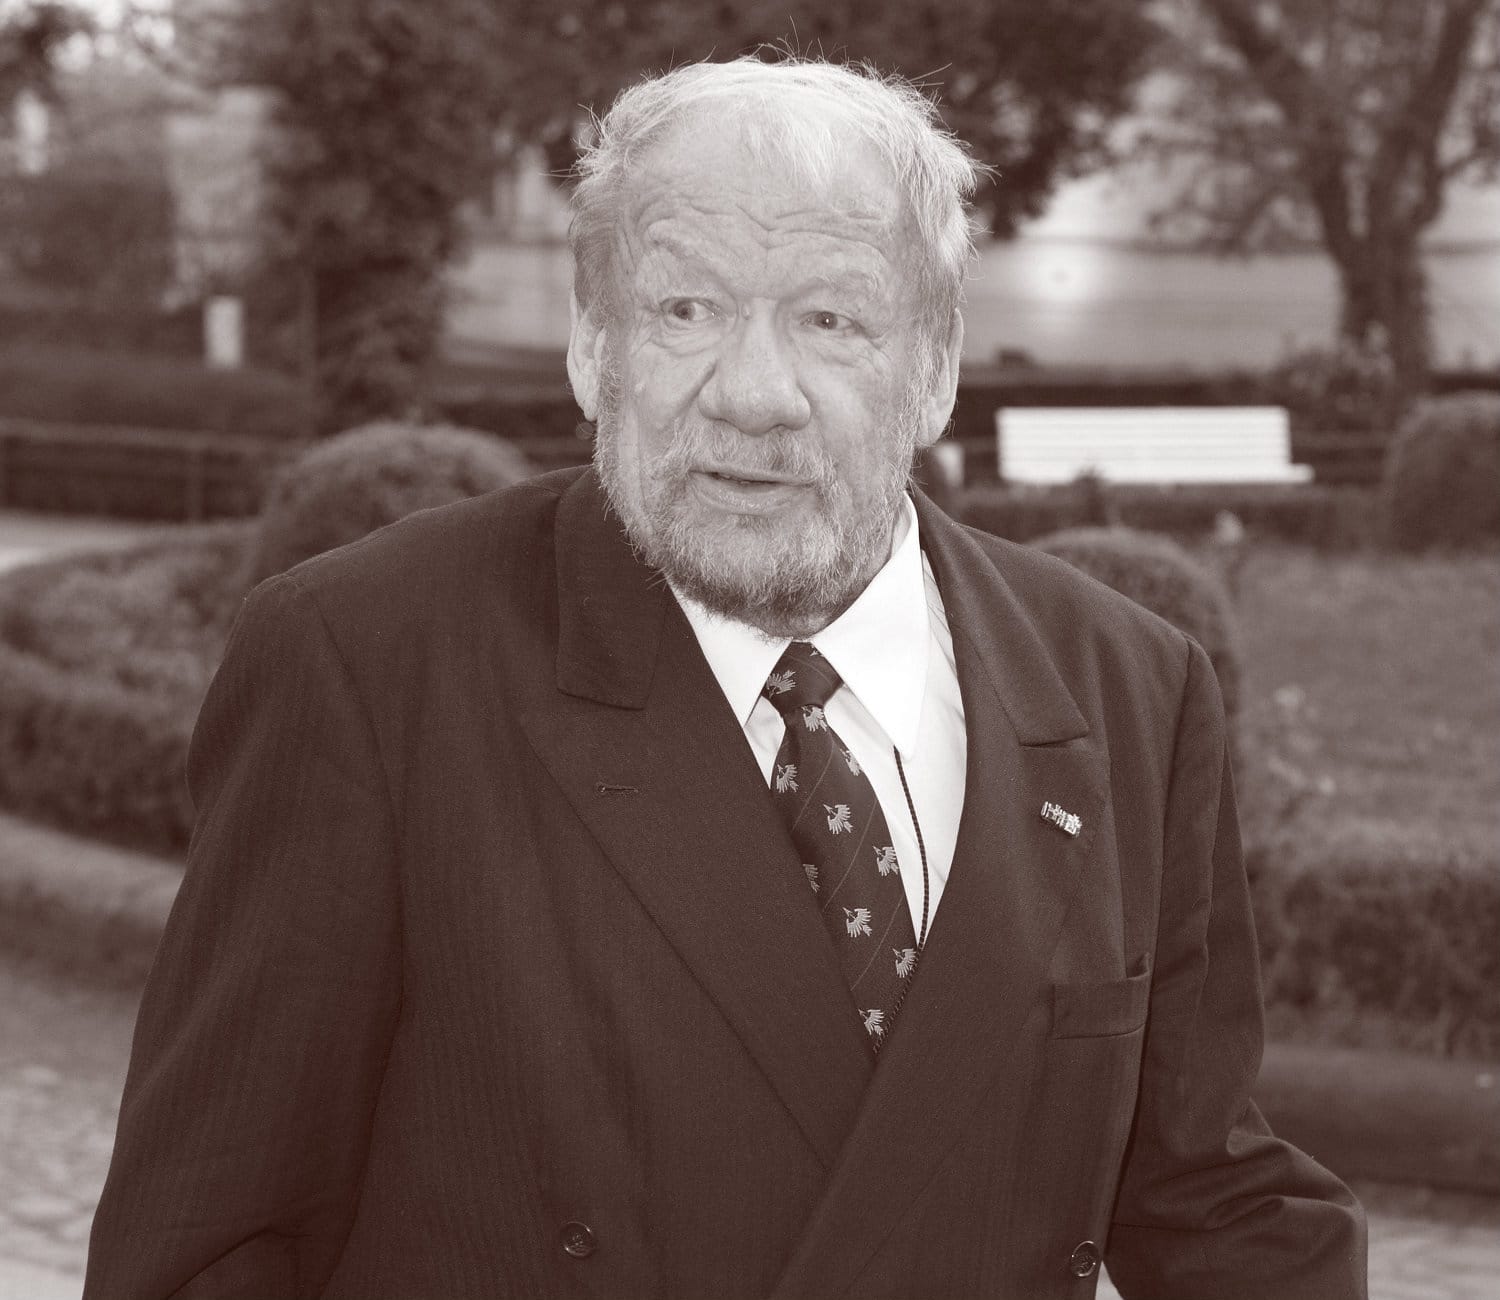 Wolfgang Völz ist am 2. Mai im Alter von 87 Jahren gestorben. Der Syncrhonsprecher war vor allem durch seine Rolle "Käpt'n Blaubär" bekannt.